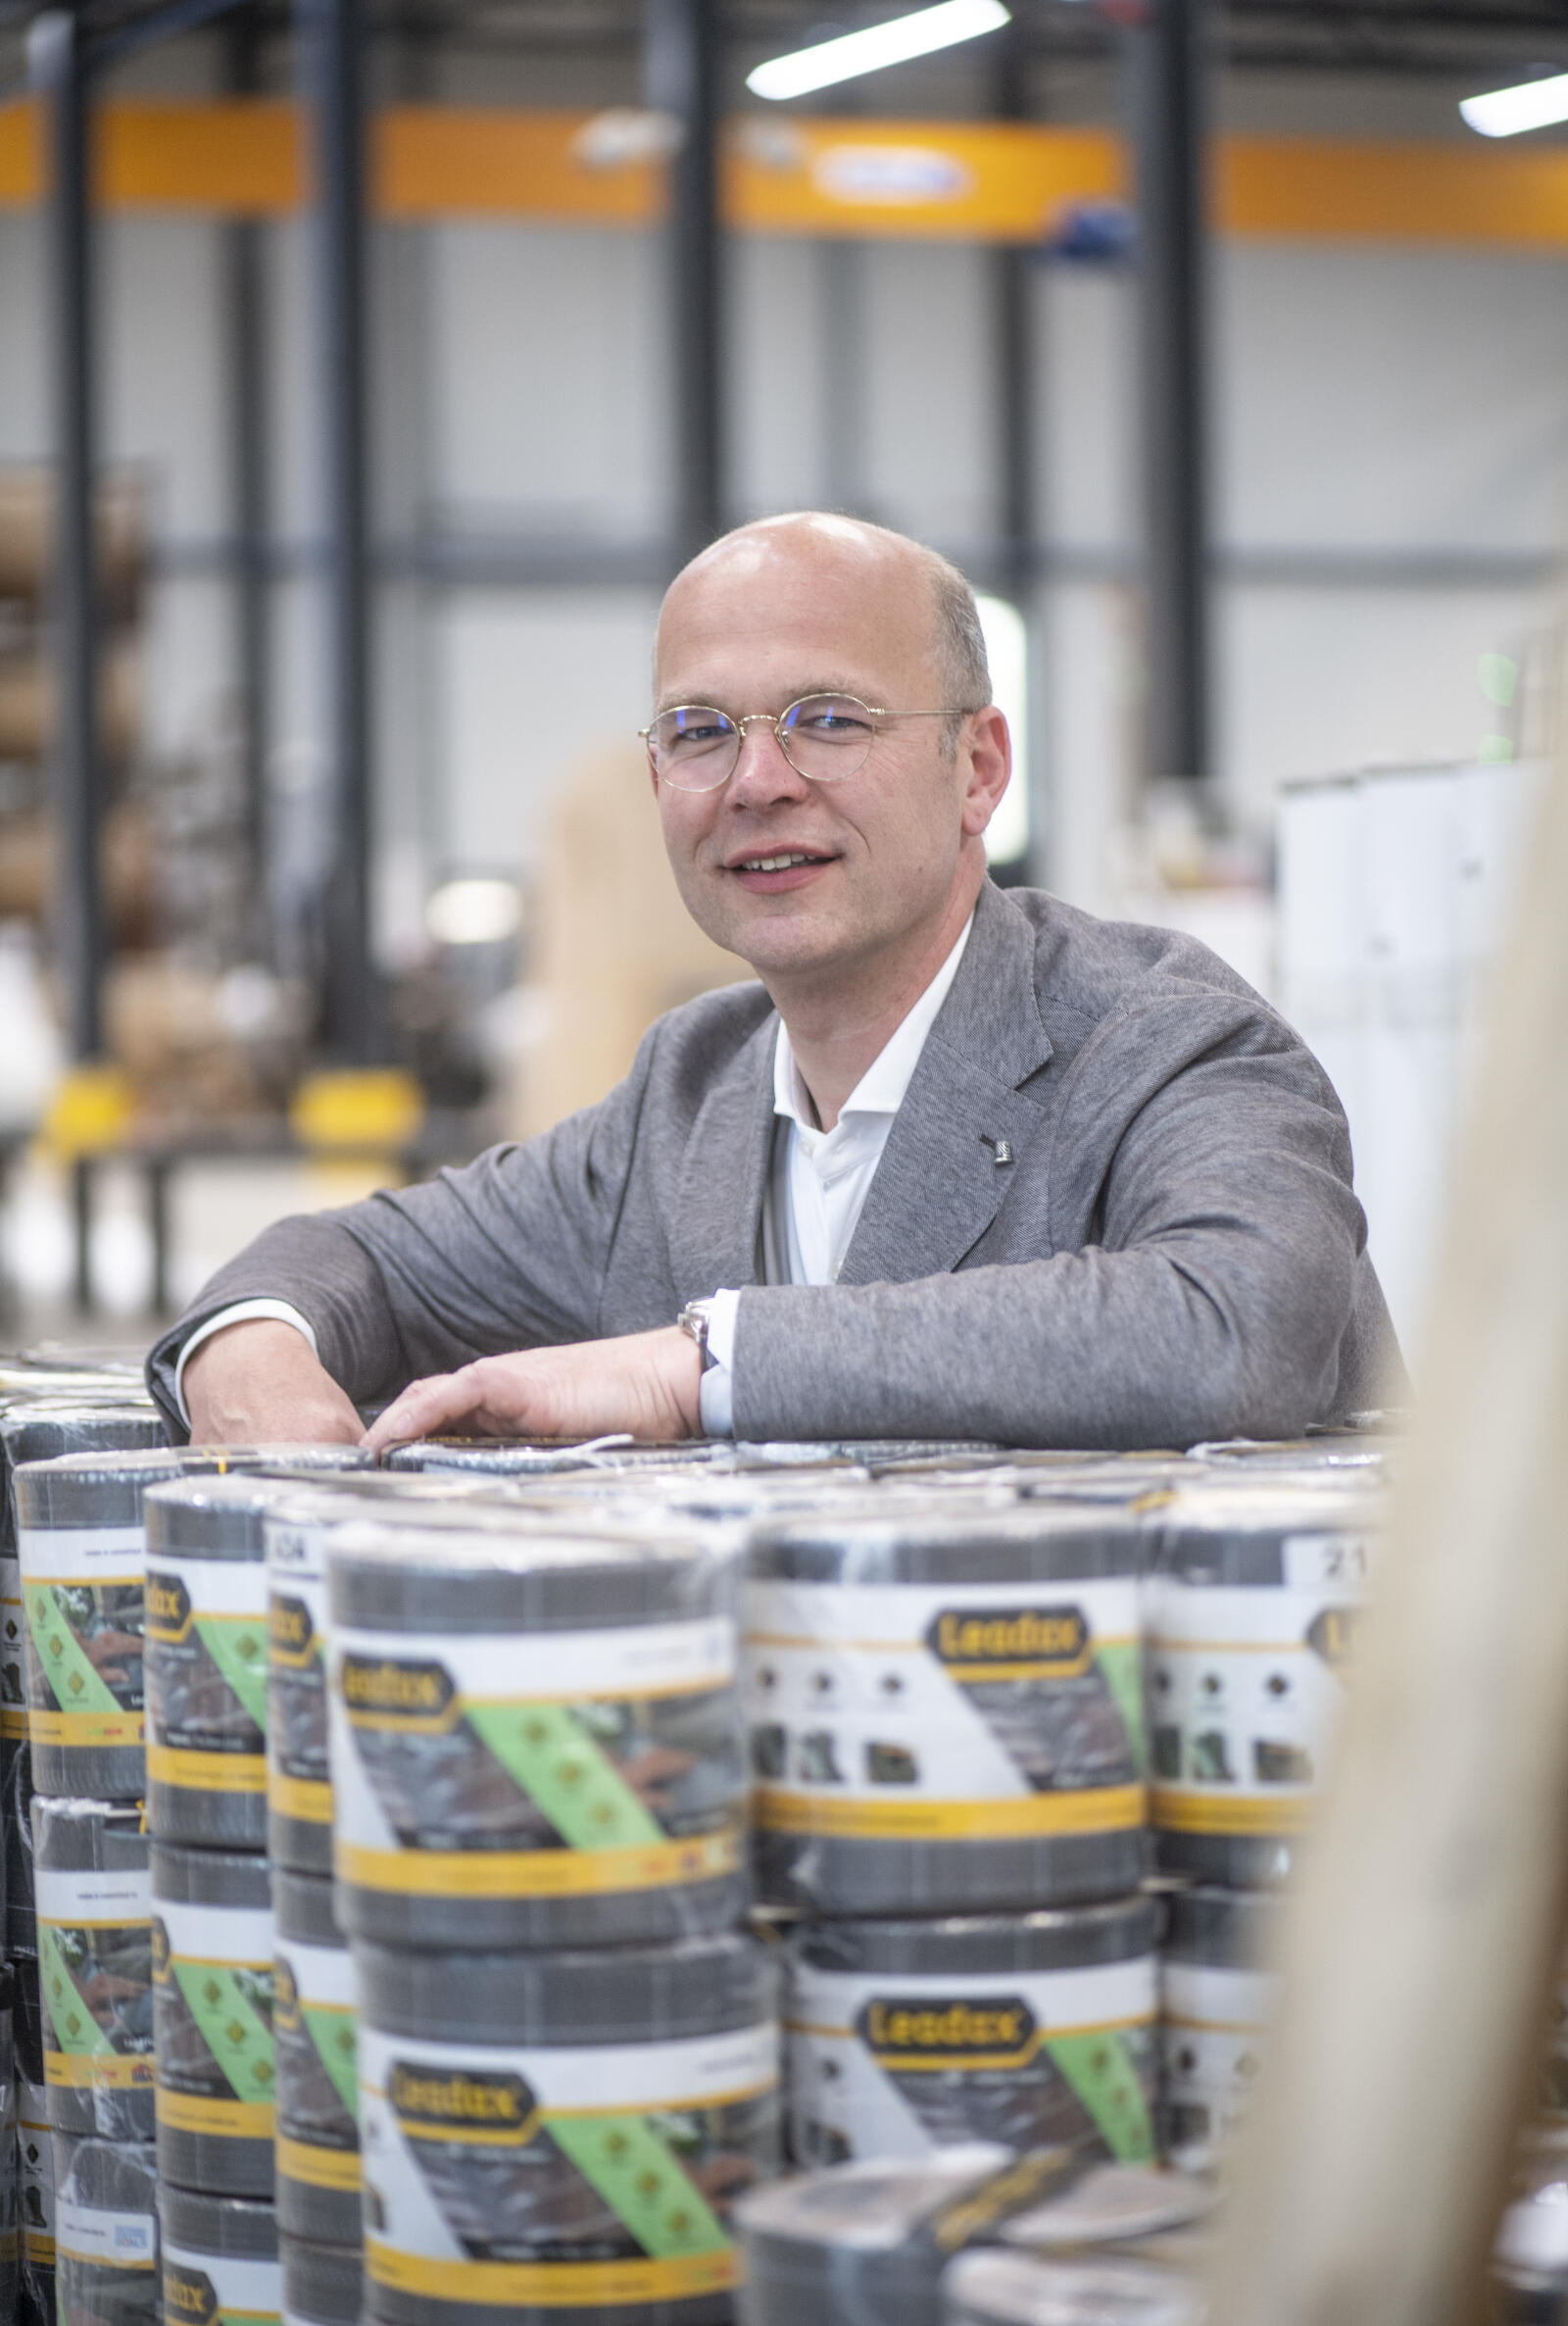 Ondernemer Roeland van Delden van Leadax: 'Bitumen is helemaal niet future proof, dus daar moest ik wat op gaan verzinnen.'